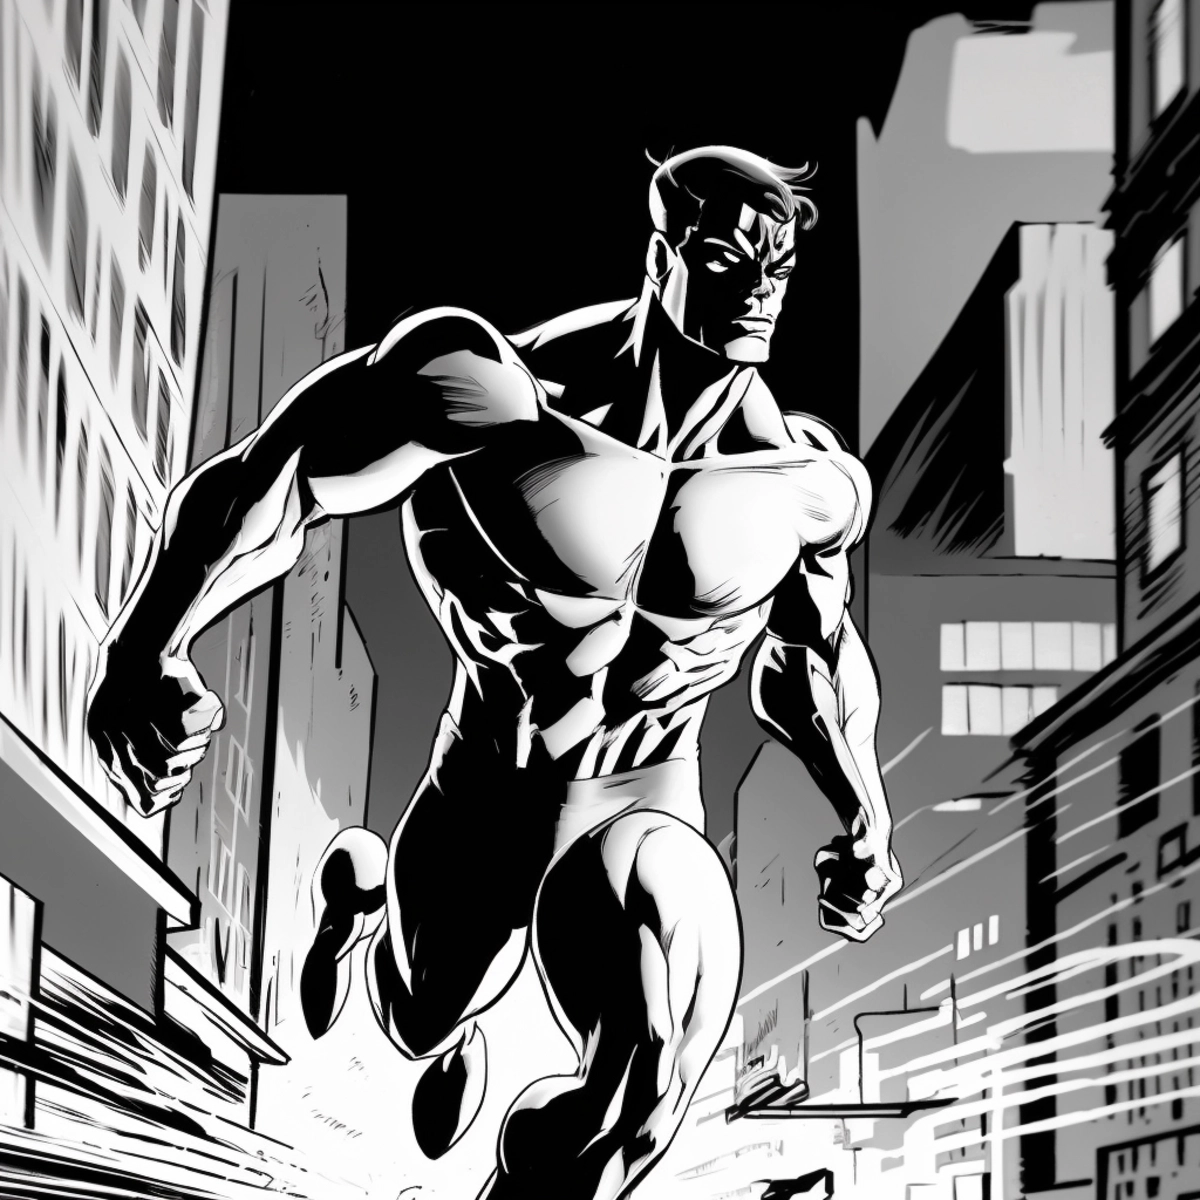 Una ilustración dinámica al estilo de un cómic de un superhéroe que salta a la acción, con un paisaje urbano de fondo